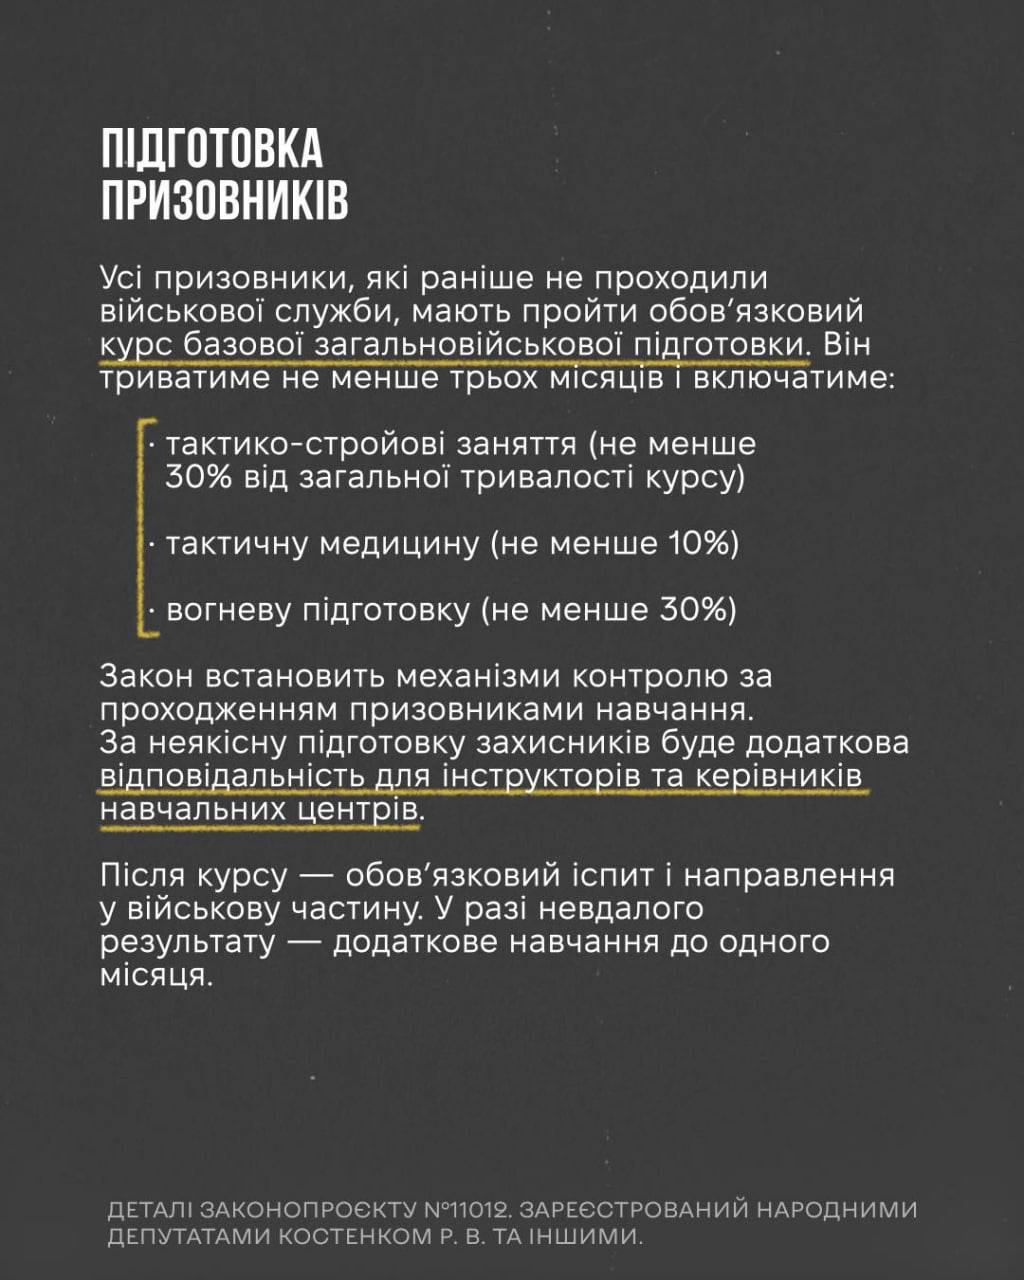 Снимок законопроекта на rada.gov.ua (с.8)